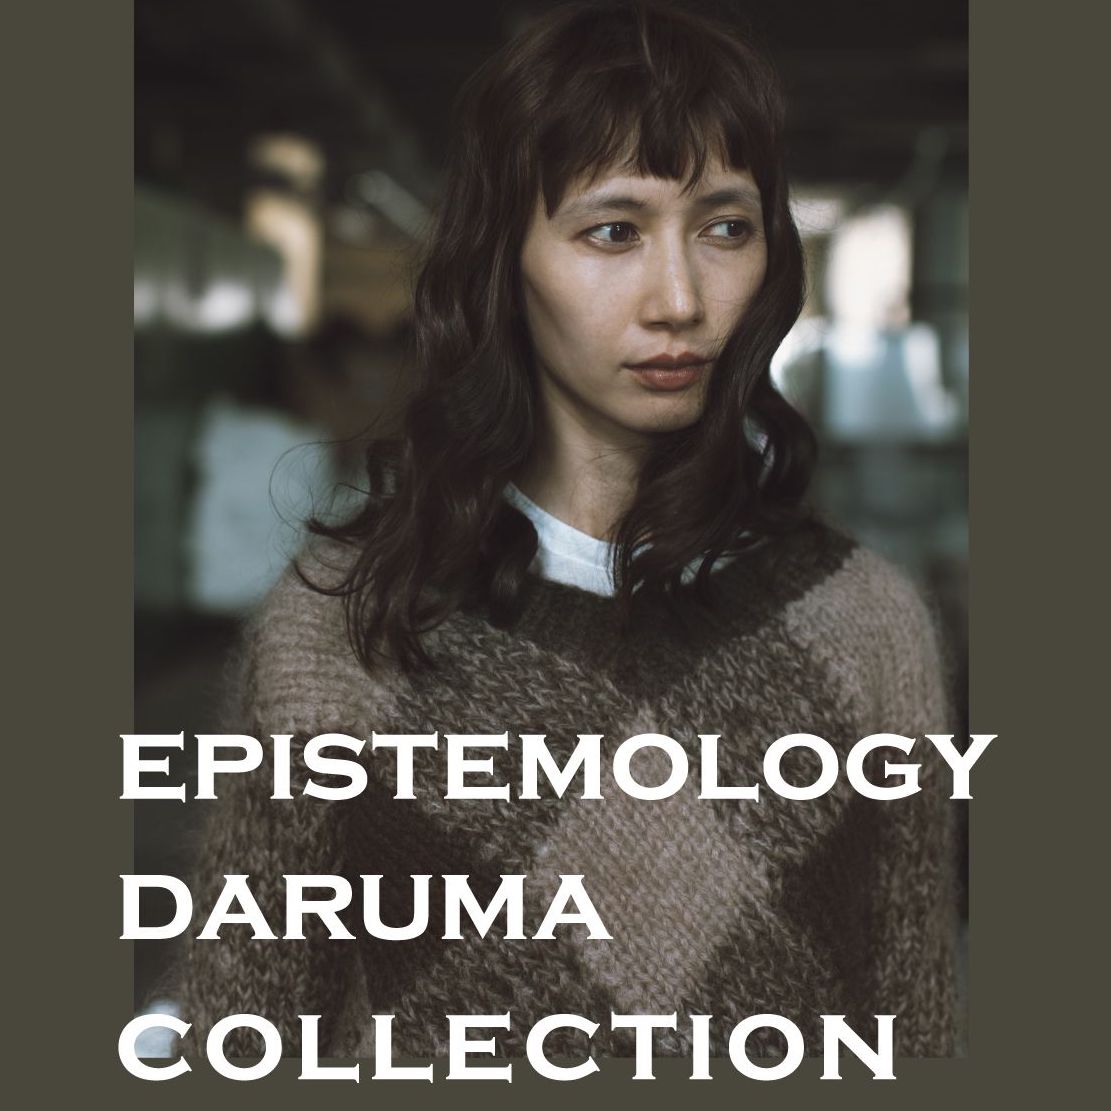 Epistemology DARUMA Collection 2020 サンプル チャリティセールのご案内